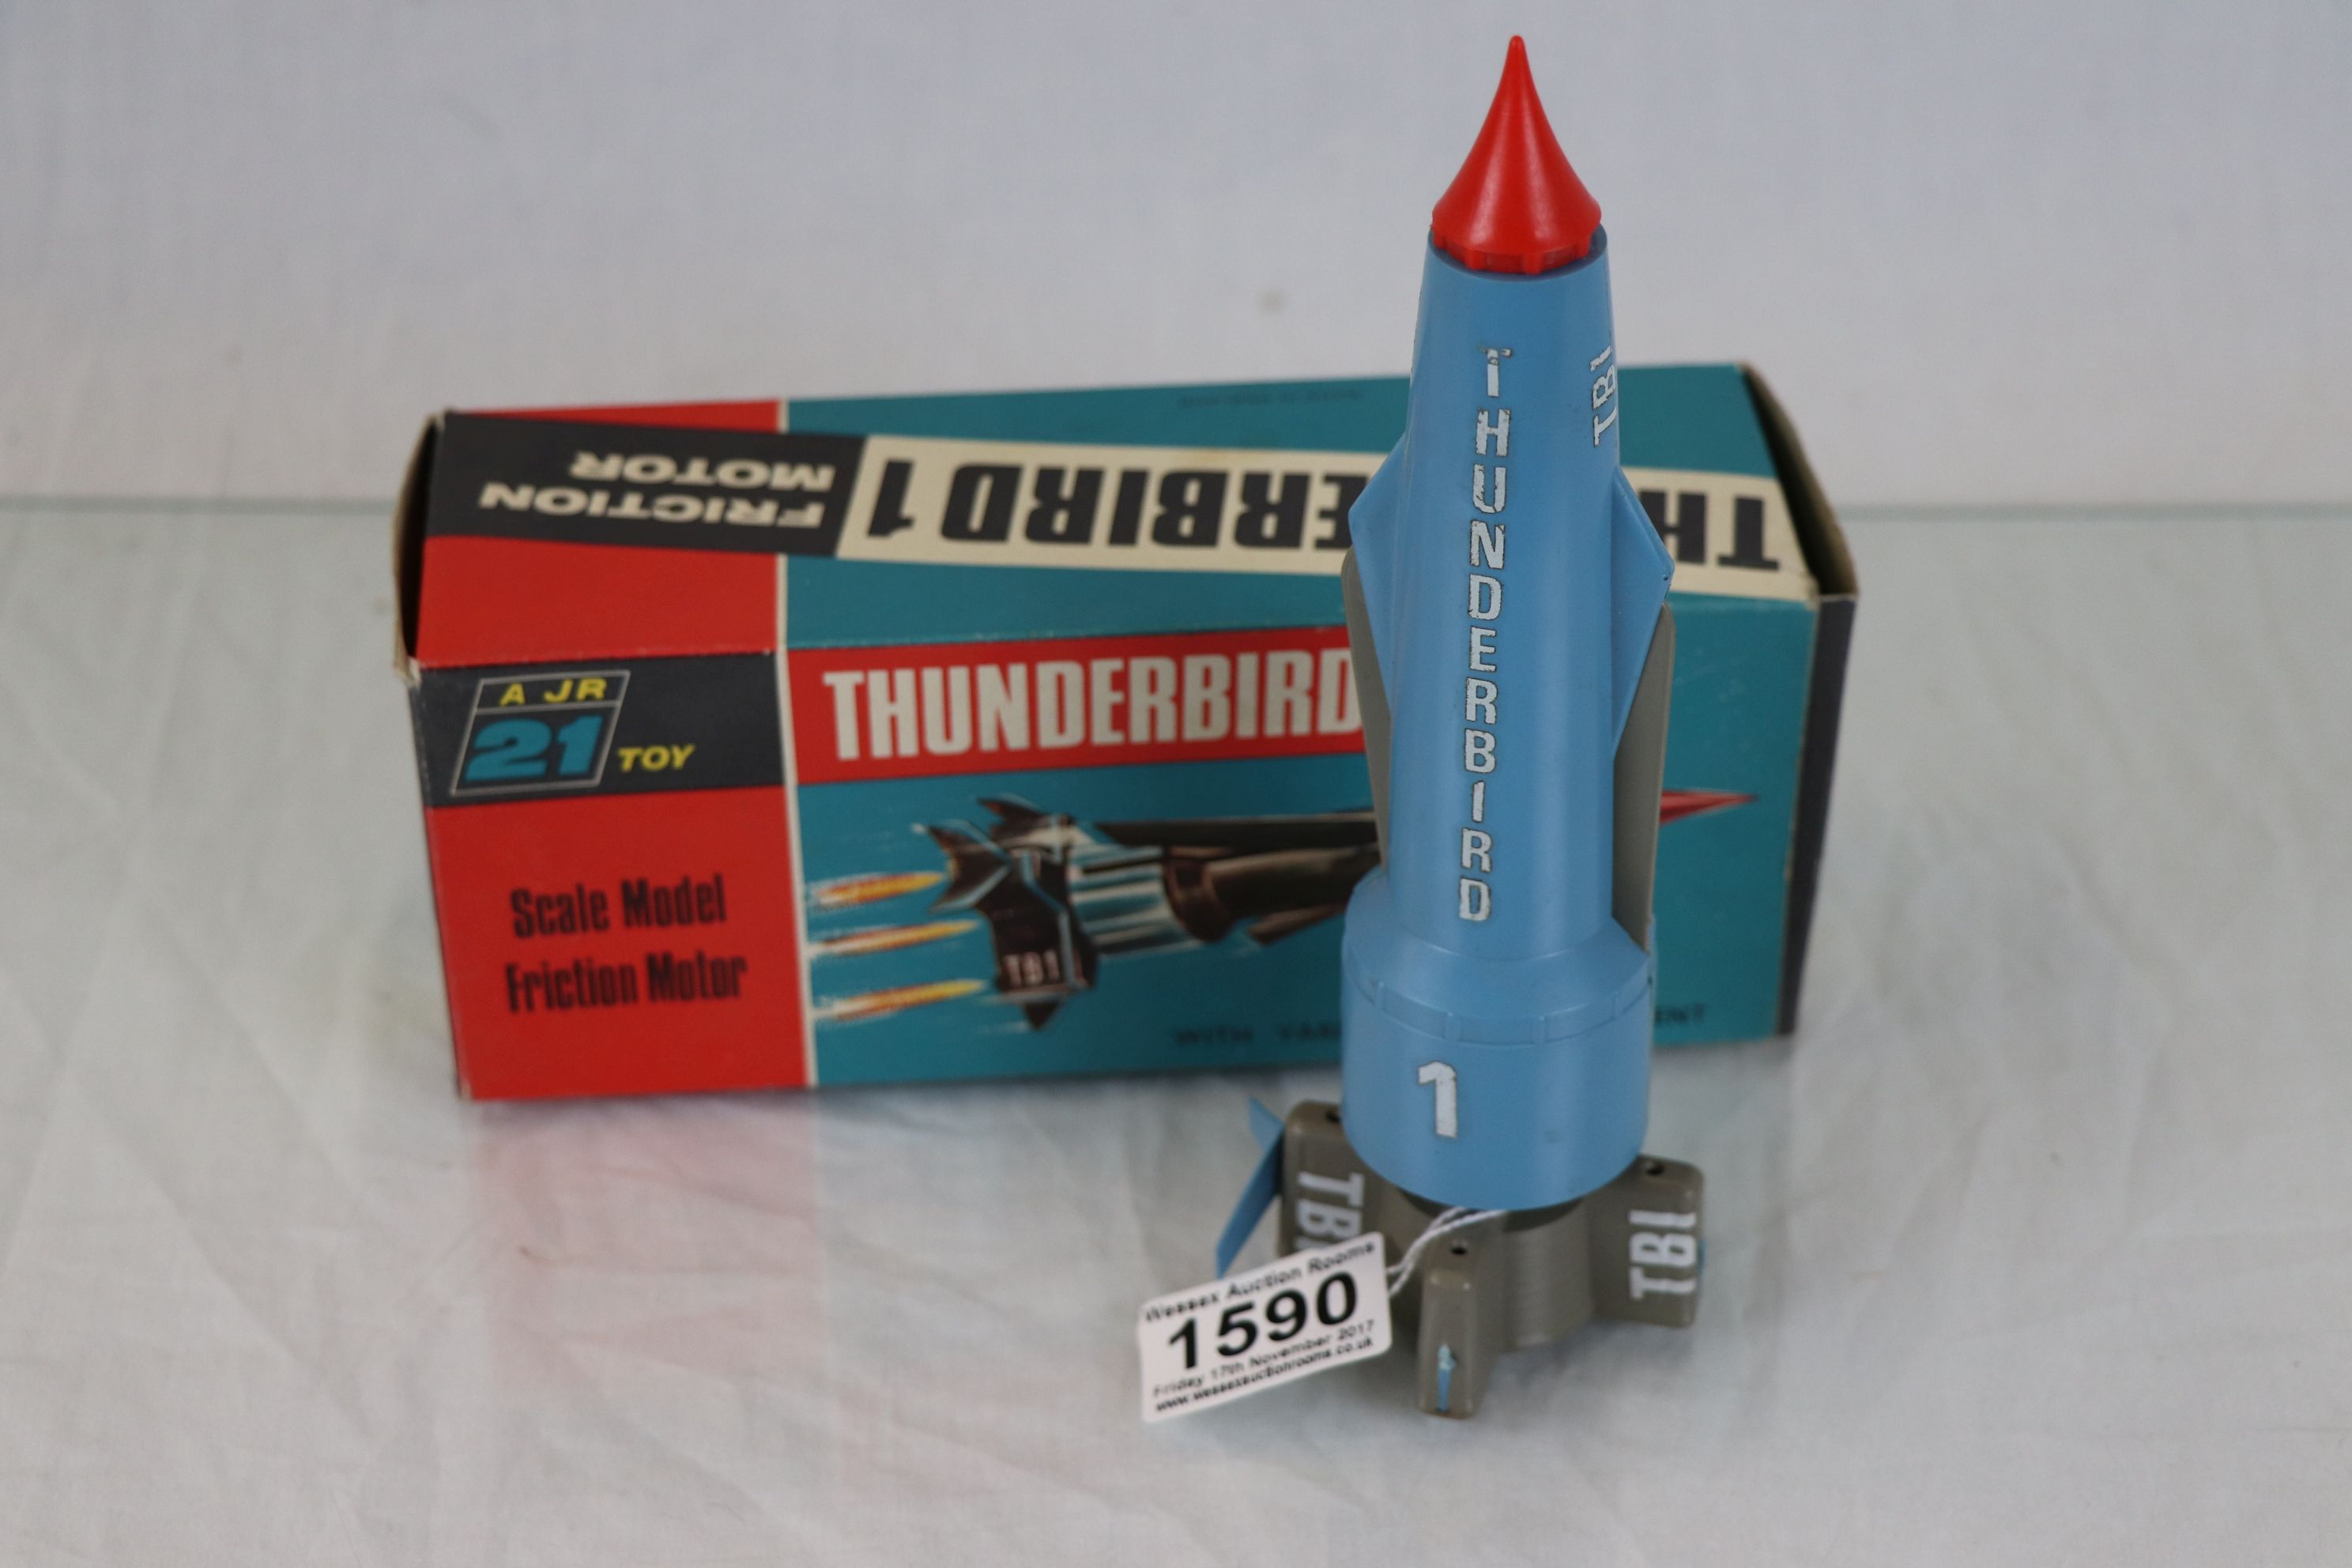 Boxed AJ Rosenthal 21 Thunderbirds Thunderbird 1 friction motor vehicle with some damage, box gd